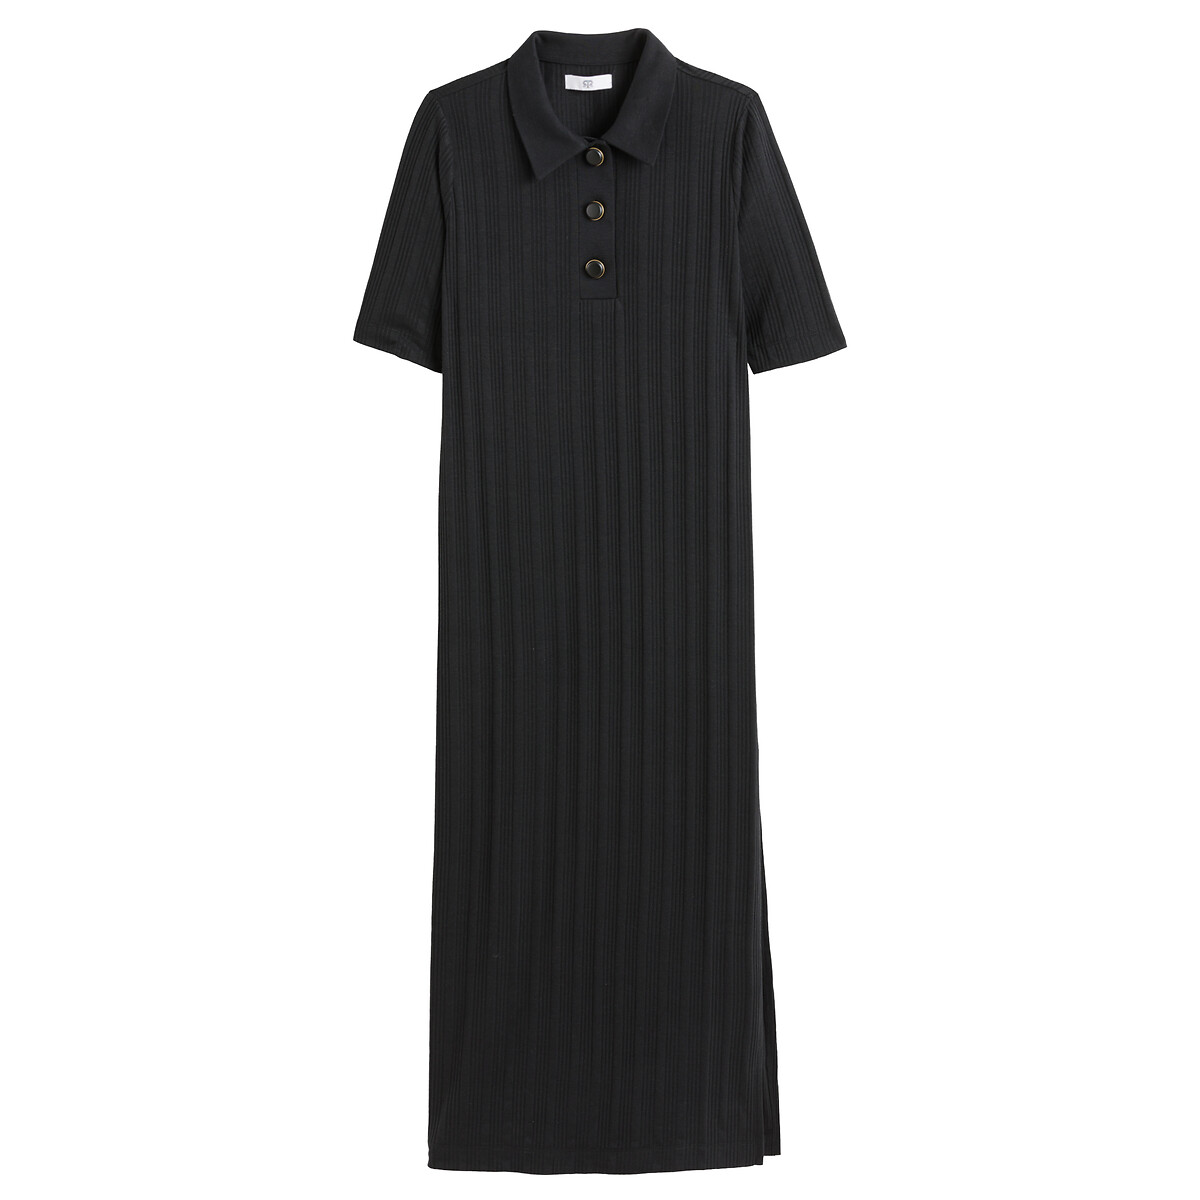 Платье Длинное с воротником поло из рифленого трикотажа L черный LaRedoute, размер L - фото 5